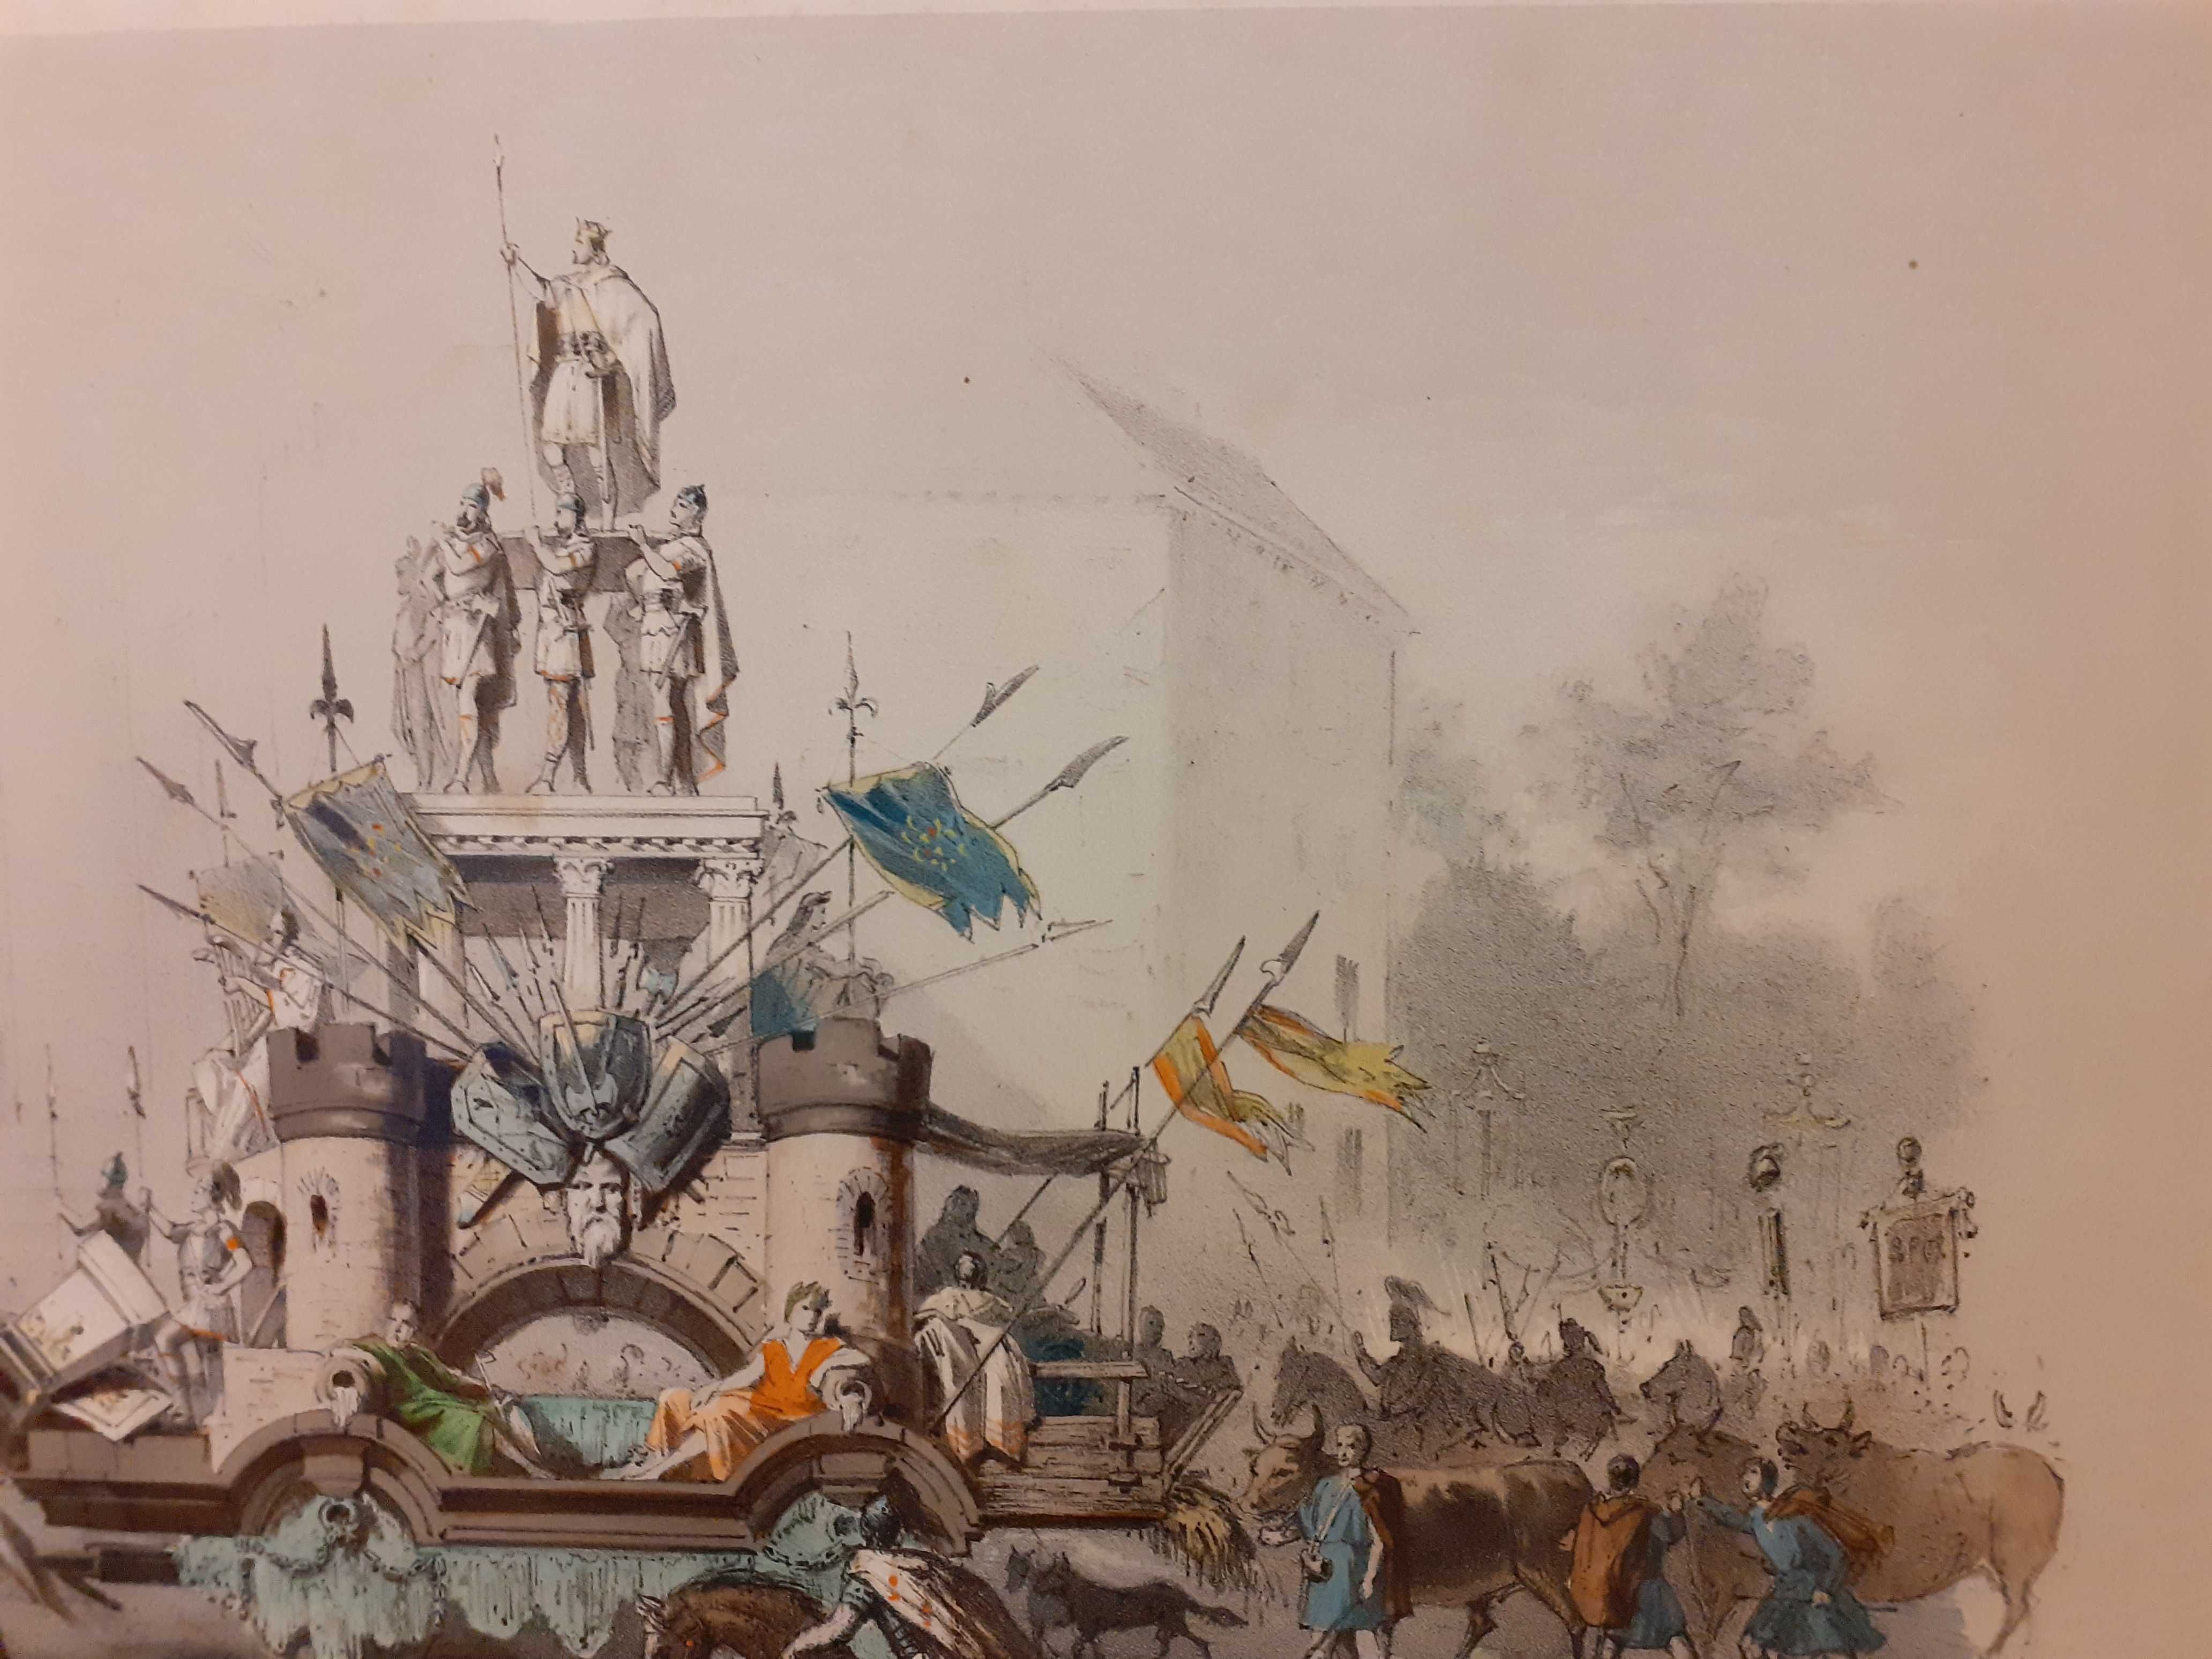 **Autentyczna Grafika Litofrafia z 1856 roku Simonau&Toovey Bruksela**